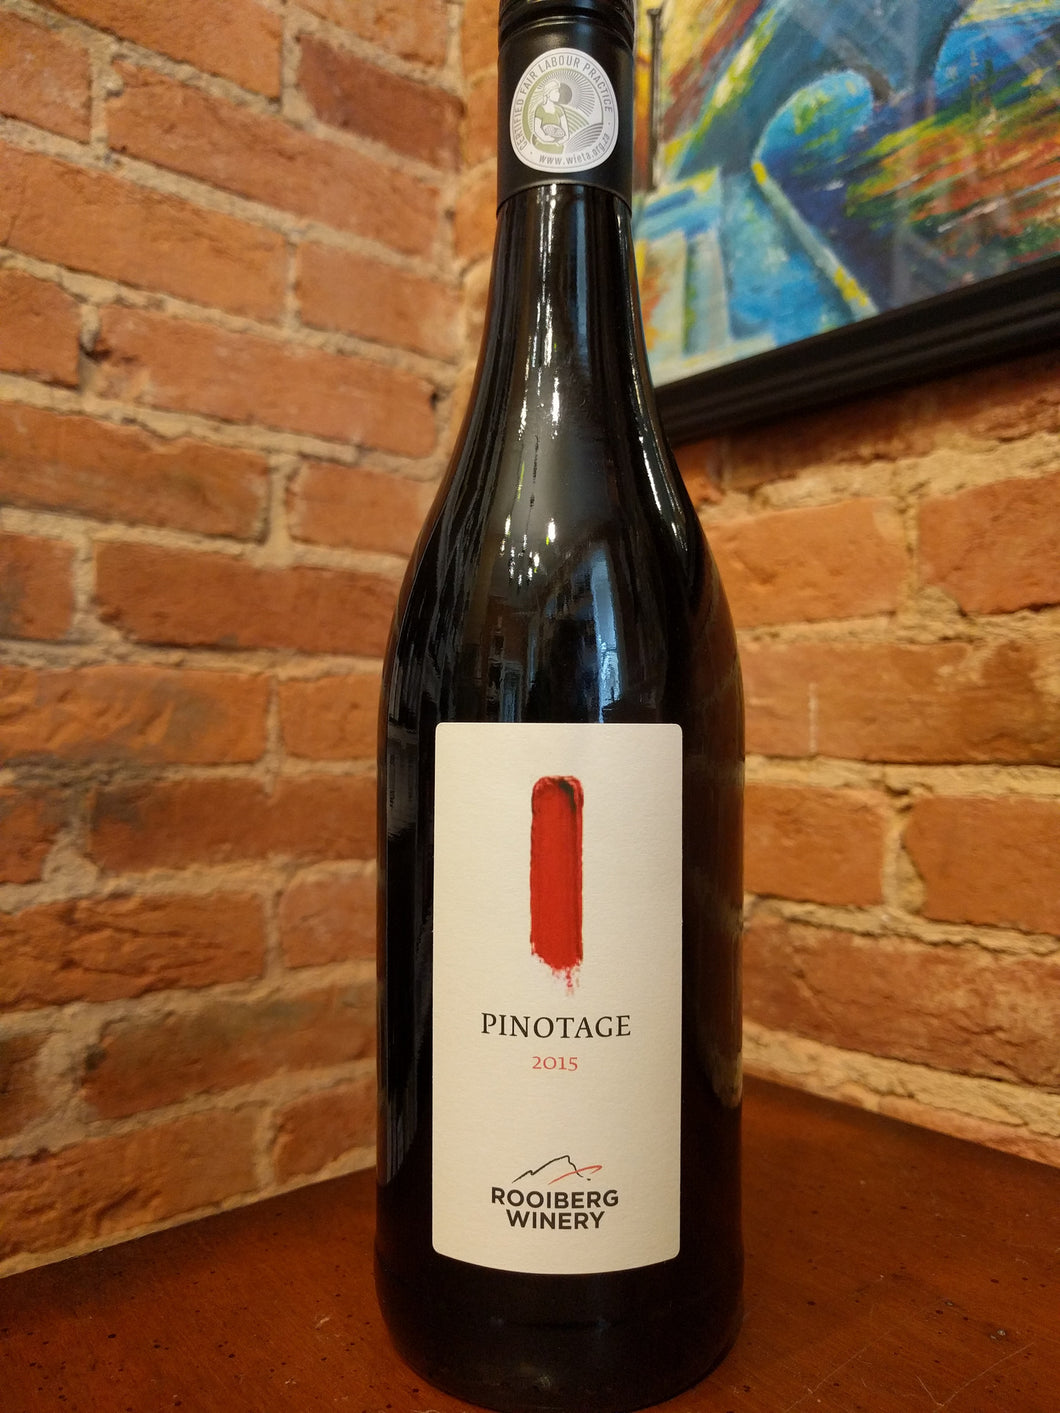 Rooiberg Winery, Pinotage (2015)